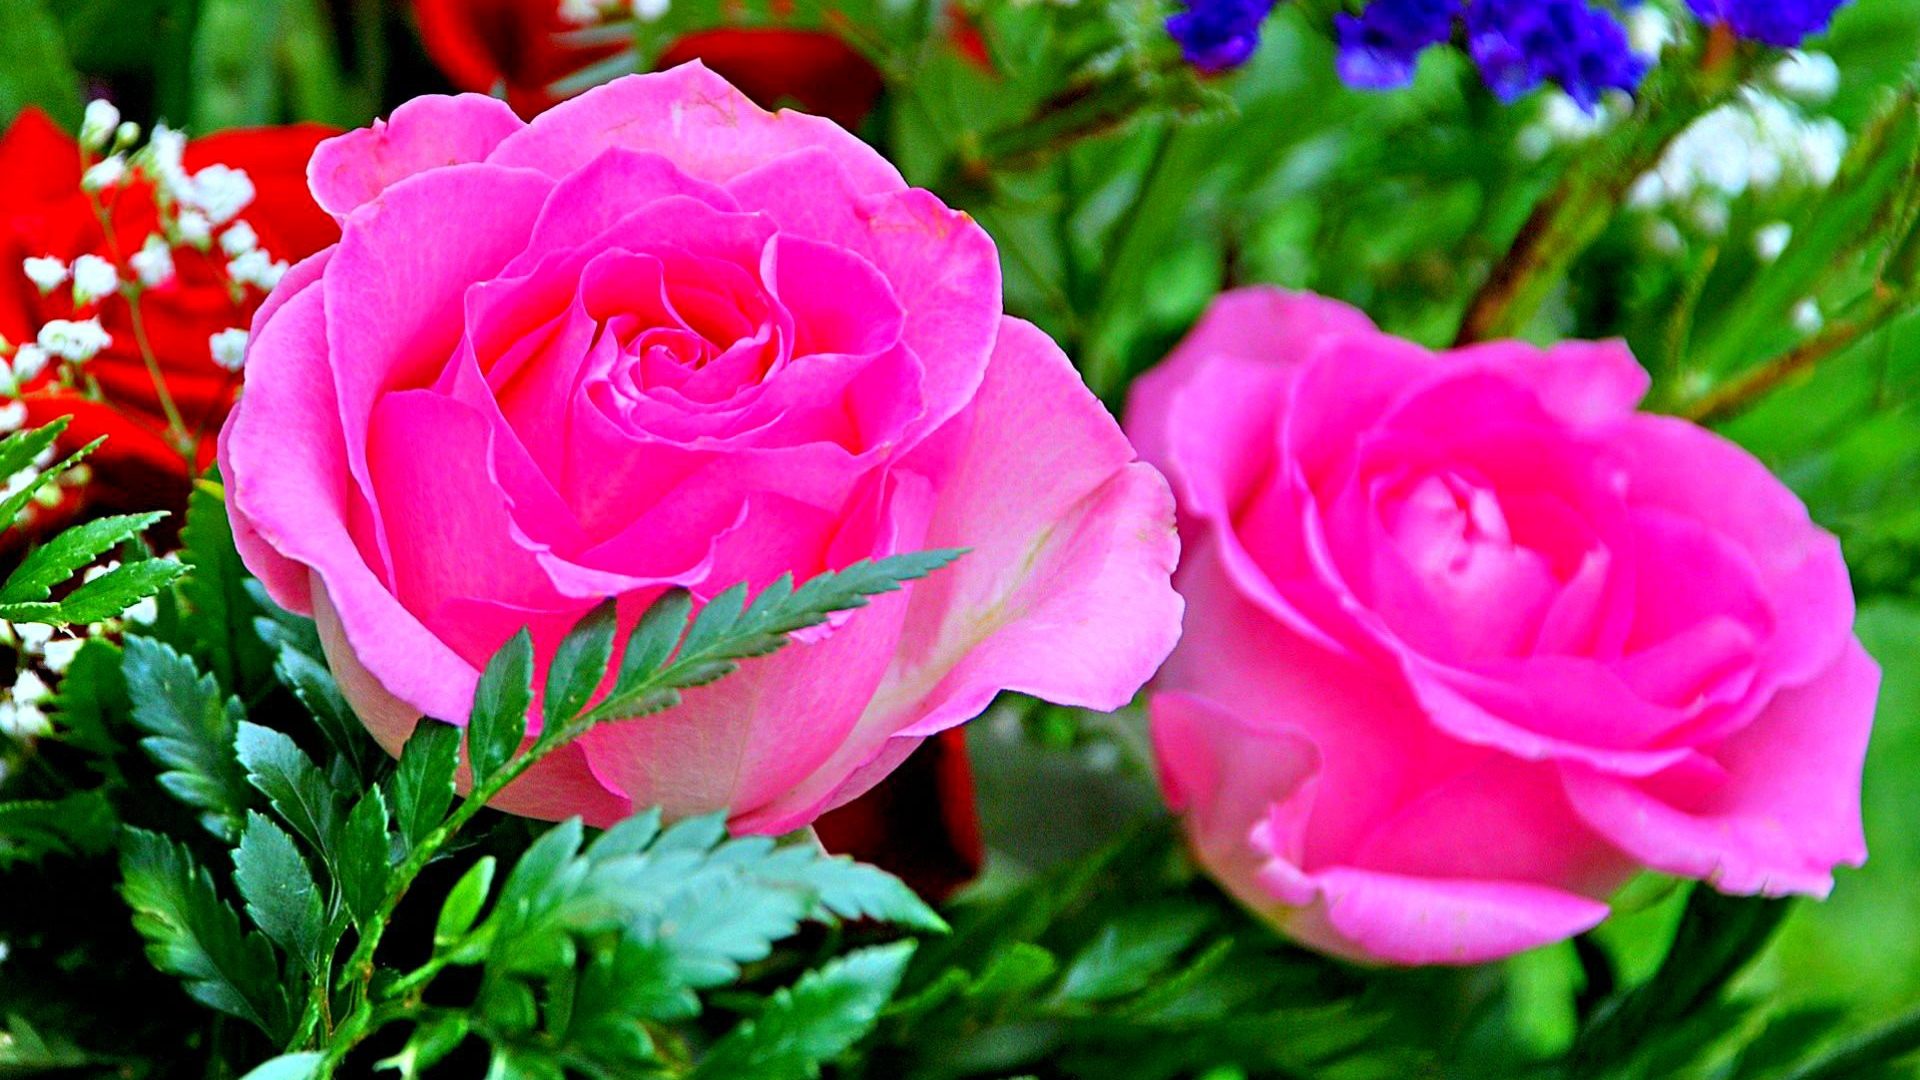 Rose Flower Wallpapers For Desktop - WallpaperSafari